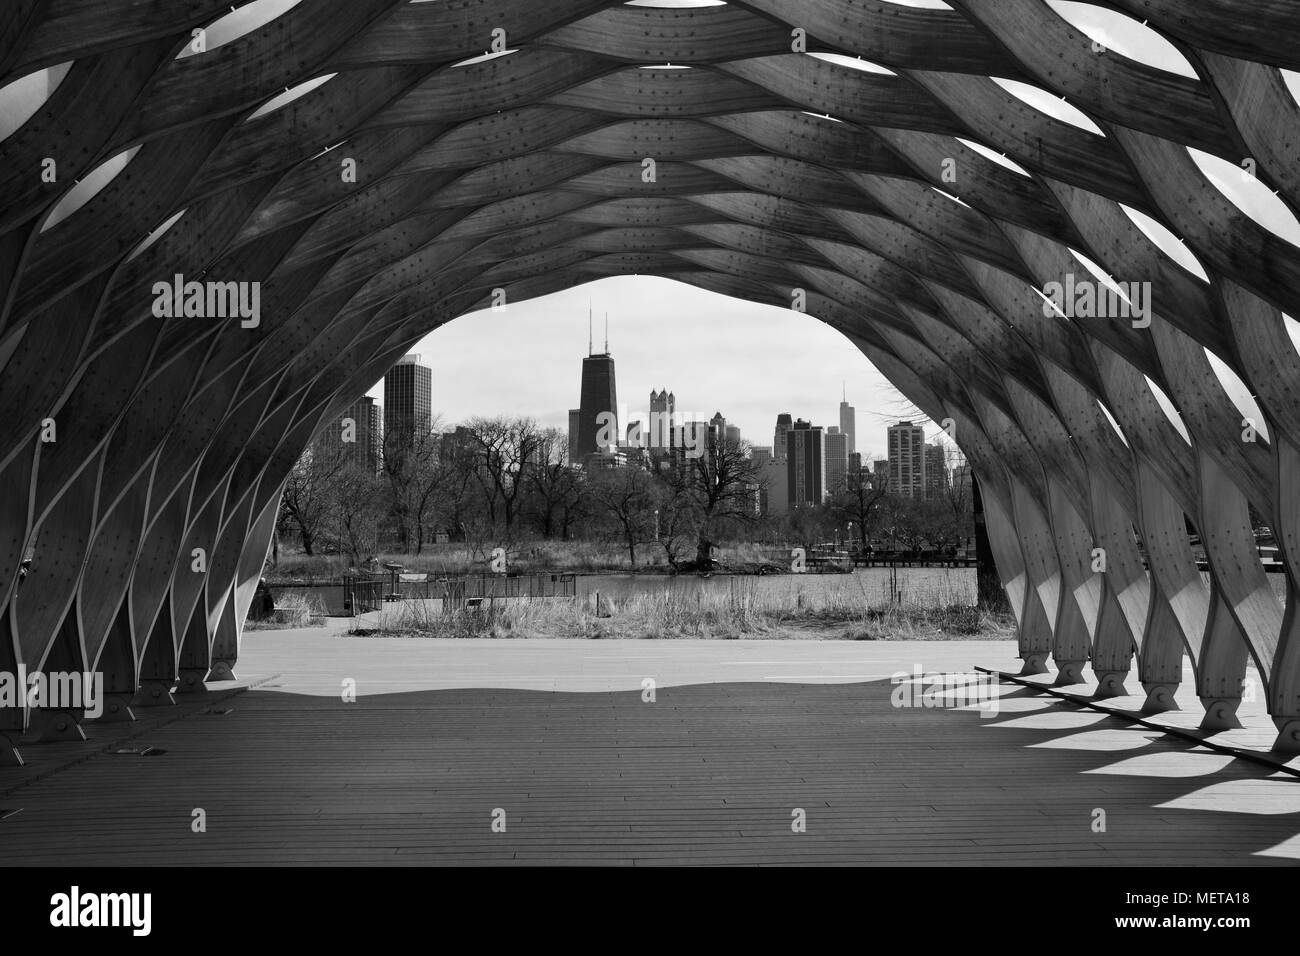 Die Skyline von Chicago, wie durch die Outdoor Education Pavillon an der Lincoln Park Zoo South Teich Natur Promenade gesehen. Stockfoto